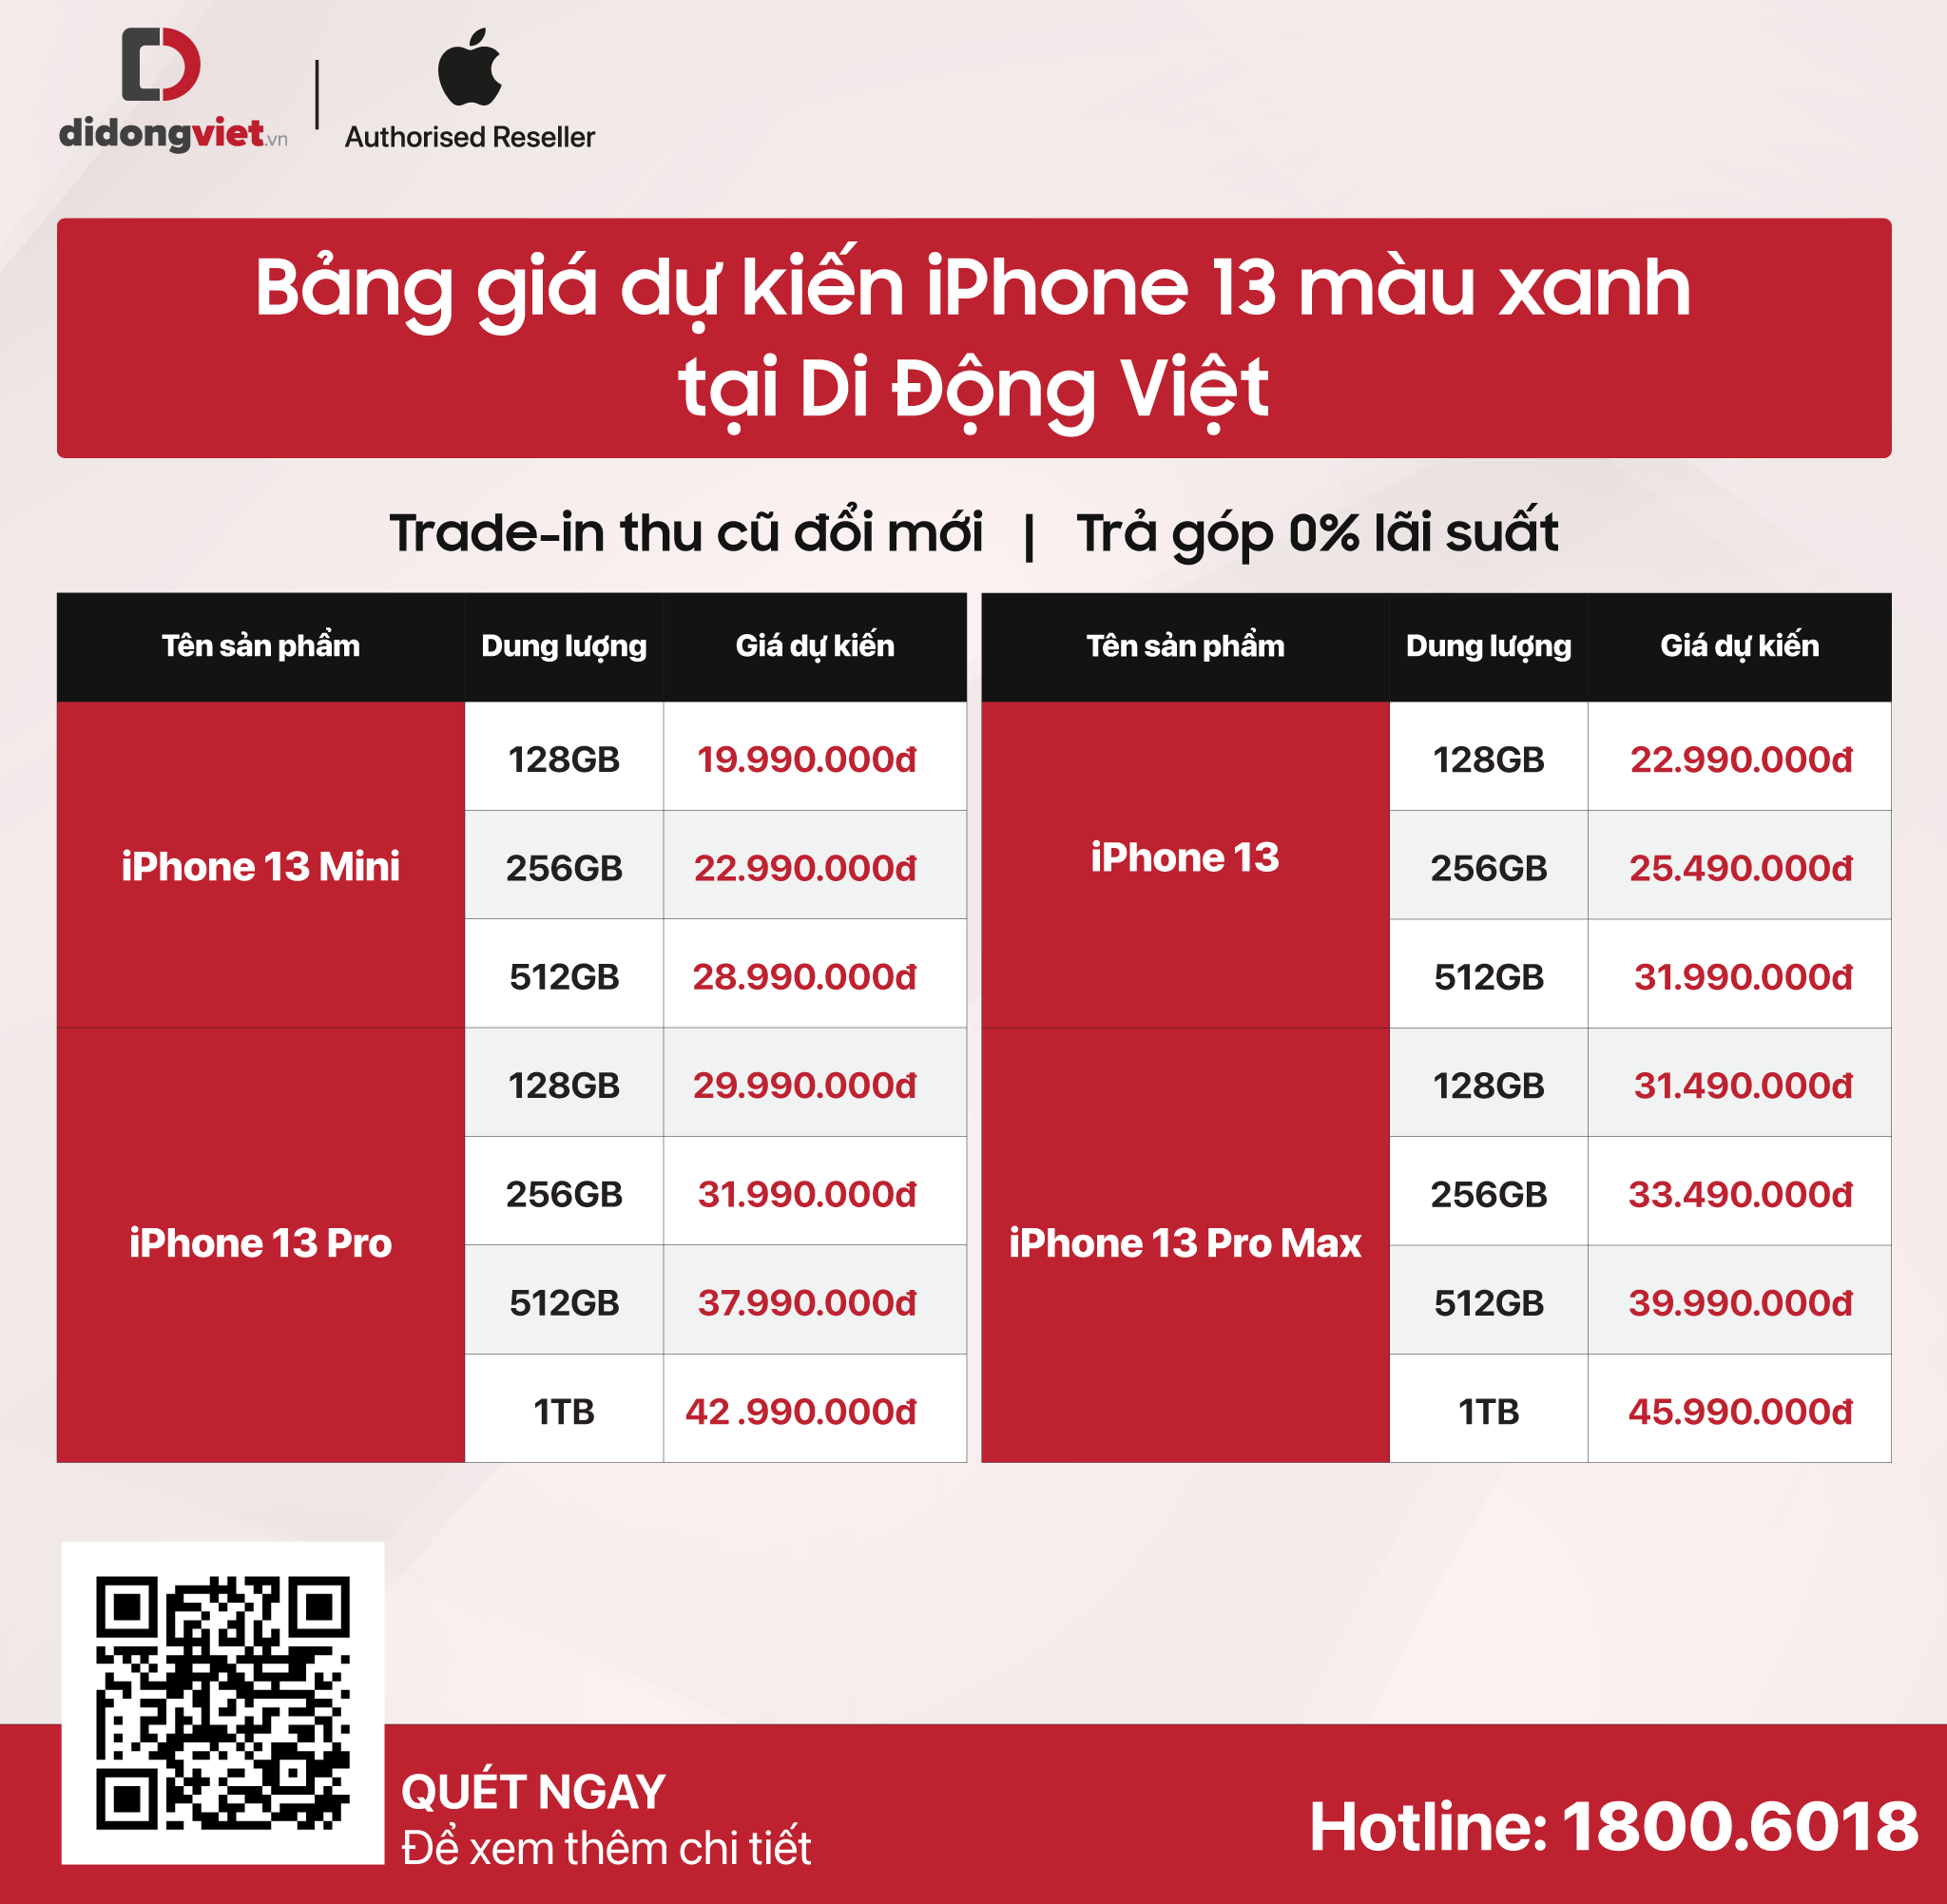 iPhone 13 series màu xanh lục mở bán quốc tế, Di Động Việt sẽ có giá tốt tại Việt Nam